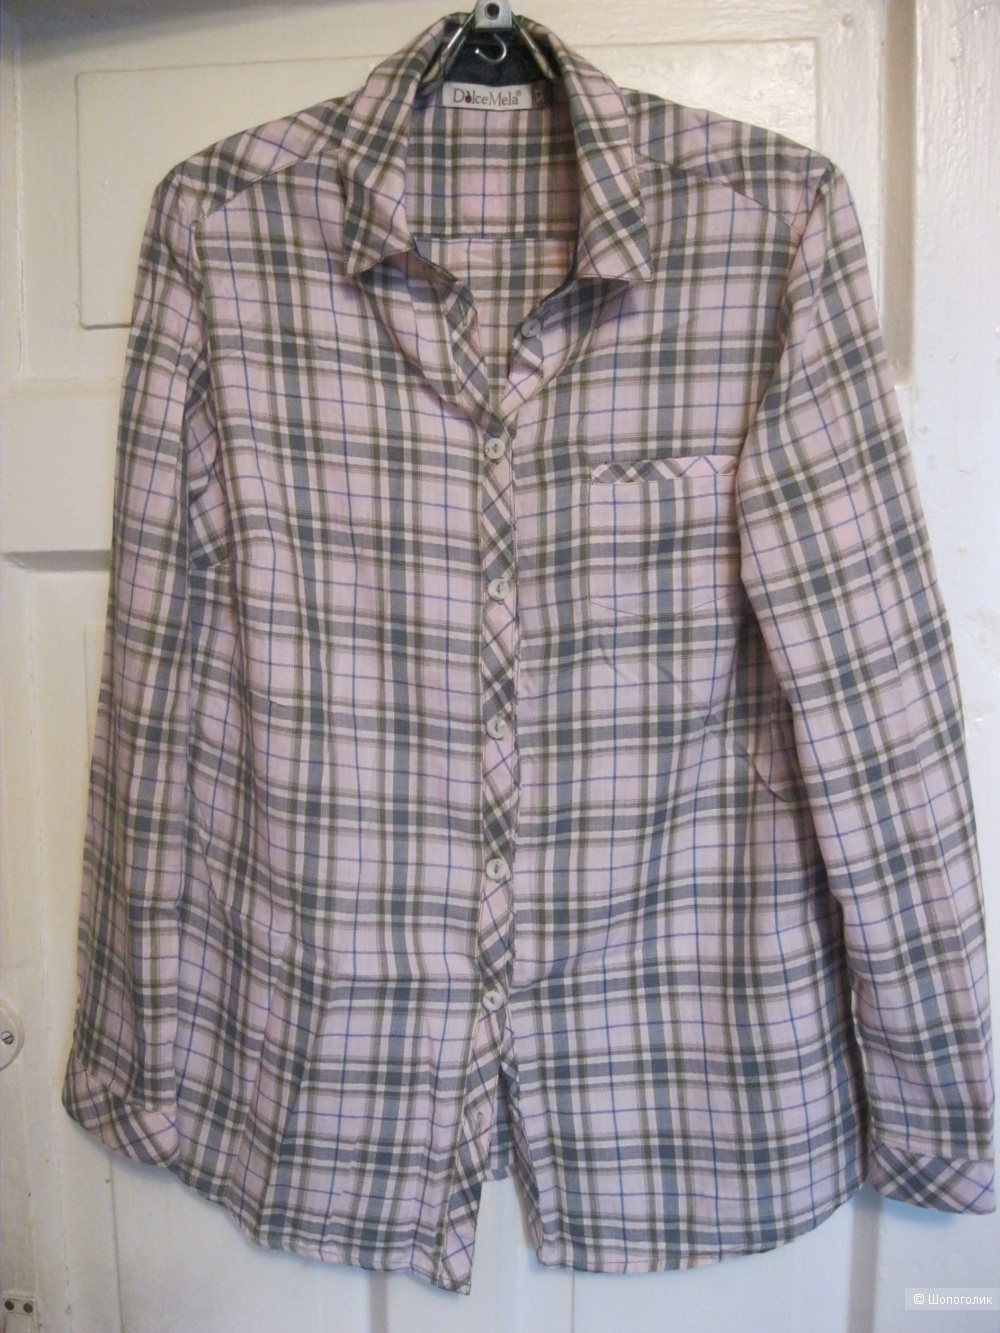 Рубашка Dolce Mela, 48 размер